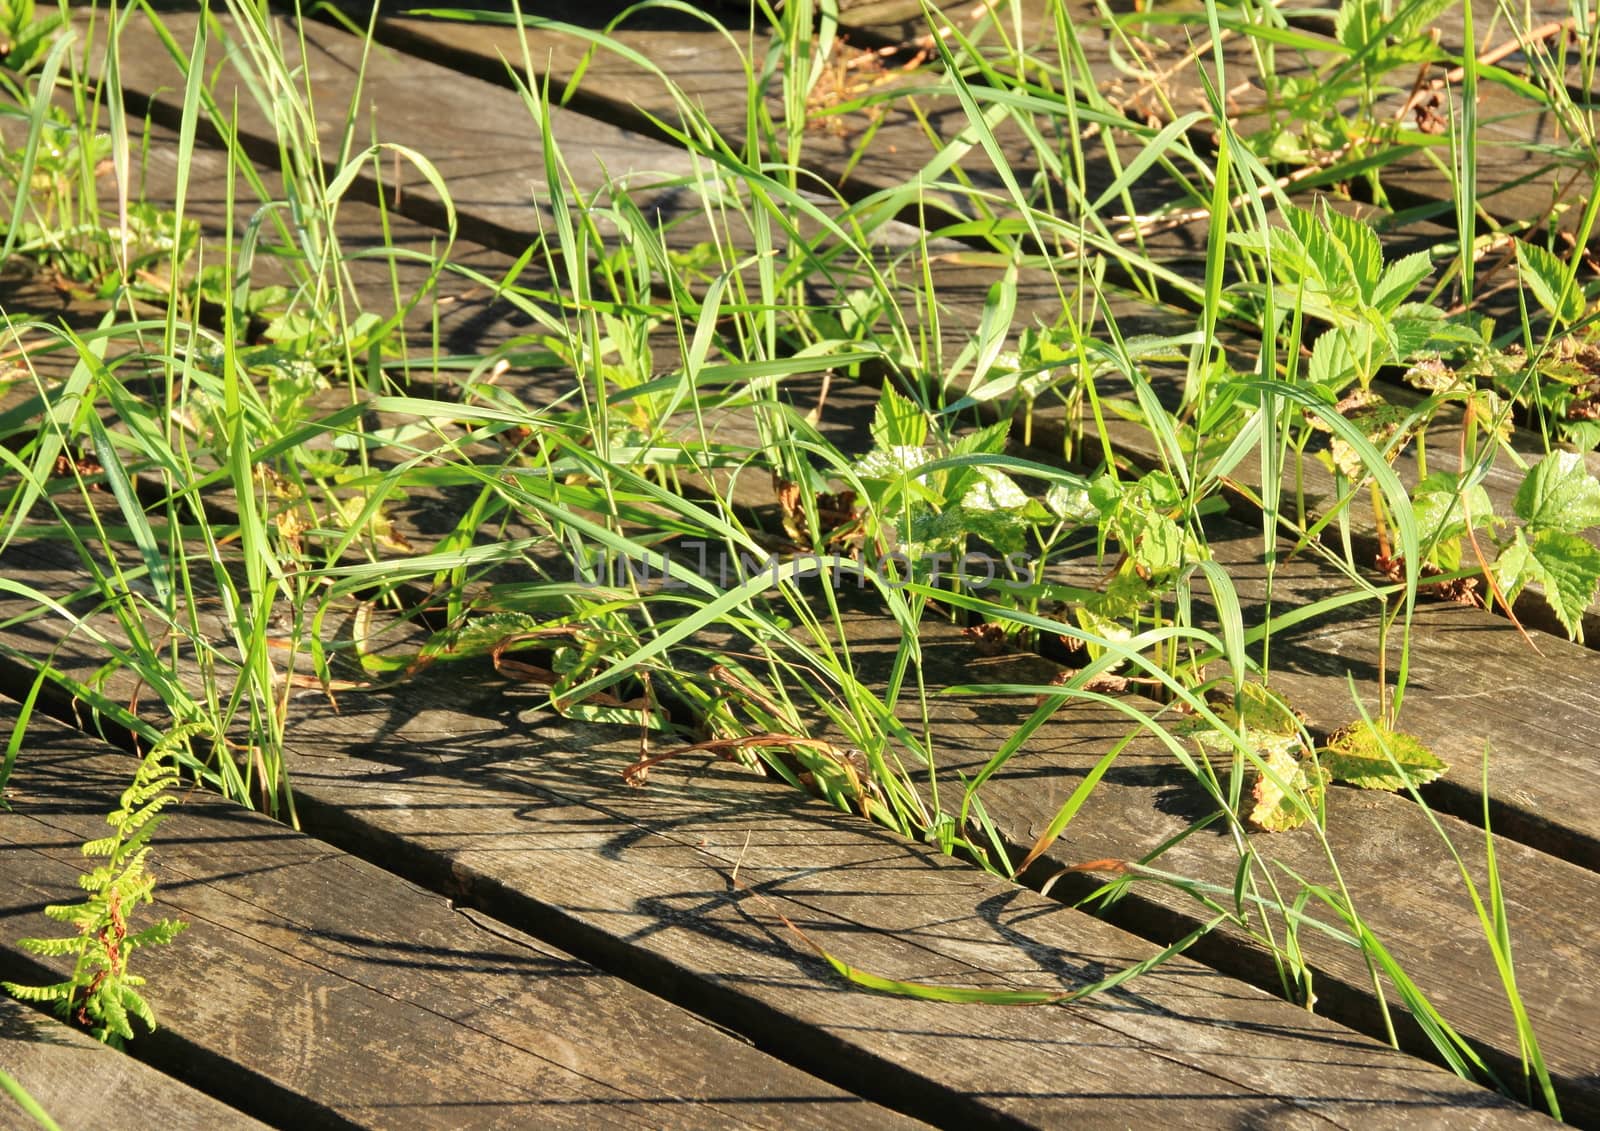 Weed and grass growing  between wooden plank floor